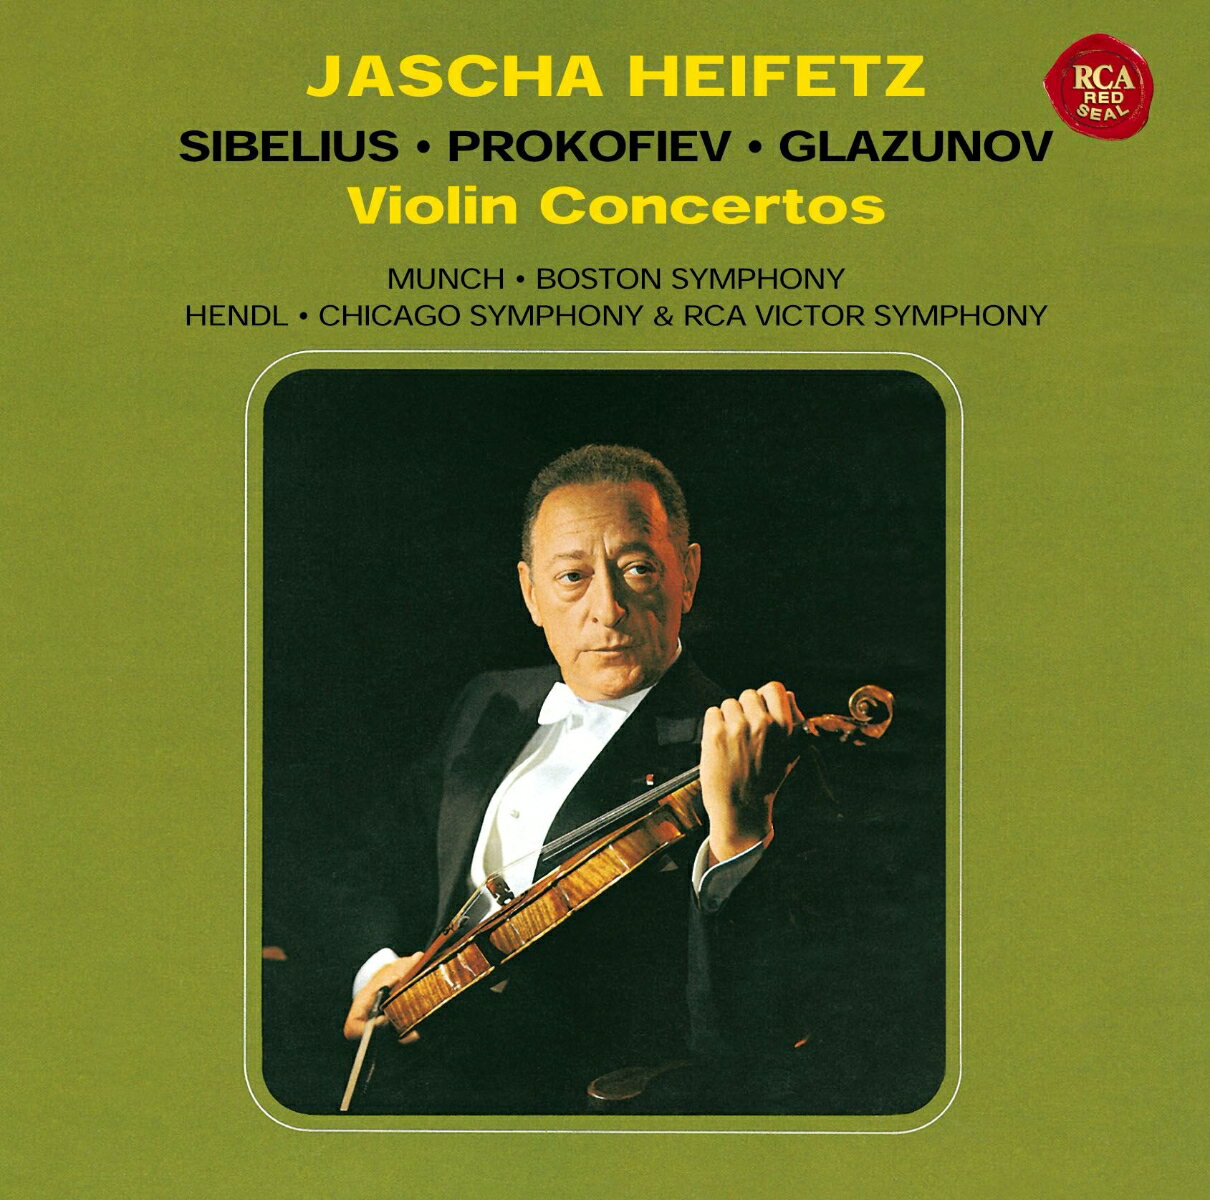 シベリウス プロコフィエフ グラズノフ:ヴァイオリン協奏曲 ヤッシャ ハイフェッツ